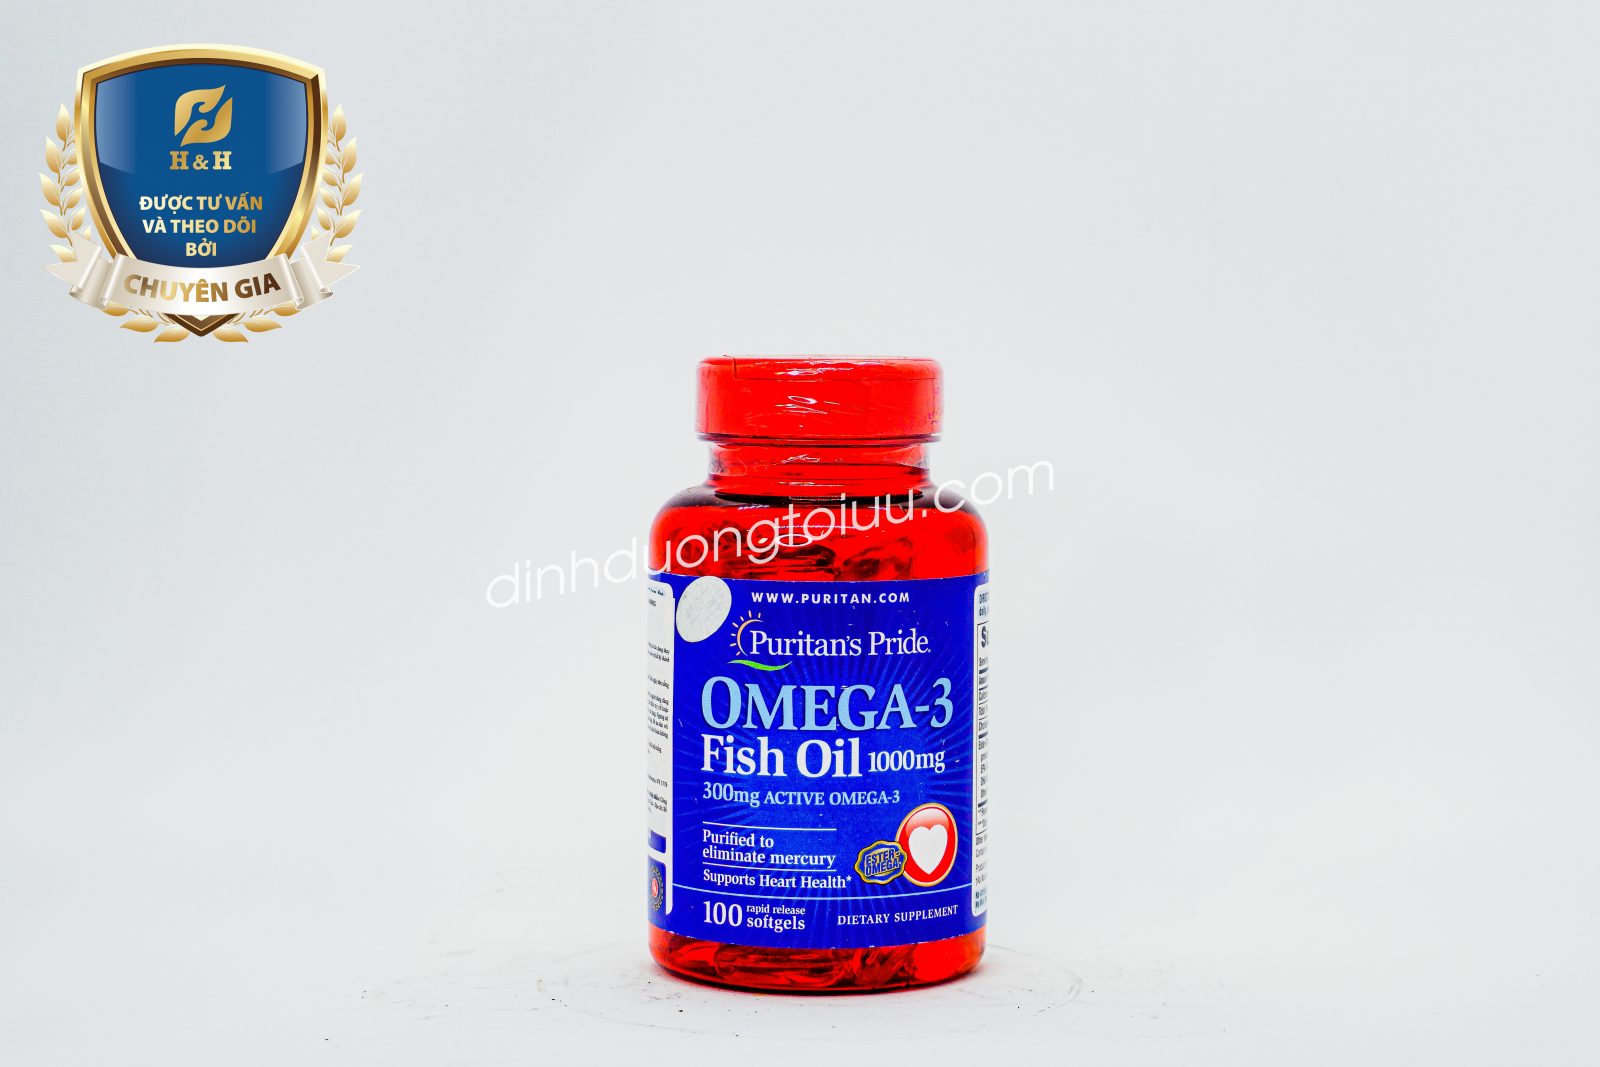 Viên uống dầu cá Omega-3 Fish Oil 1000mg - Tăng cường sáng mắt, hỗ trợ đẹp da